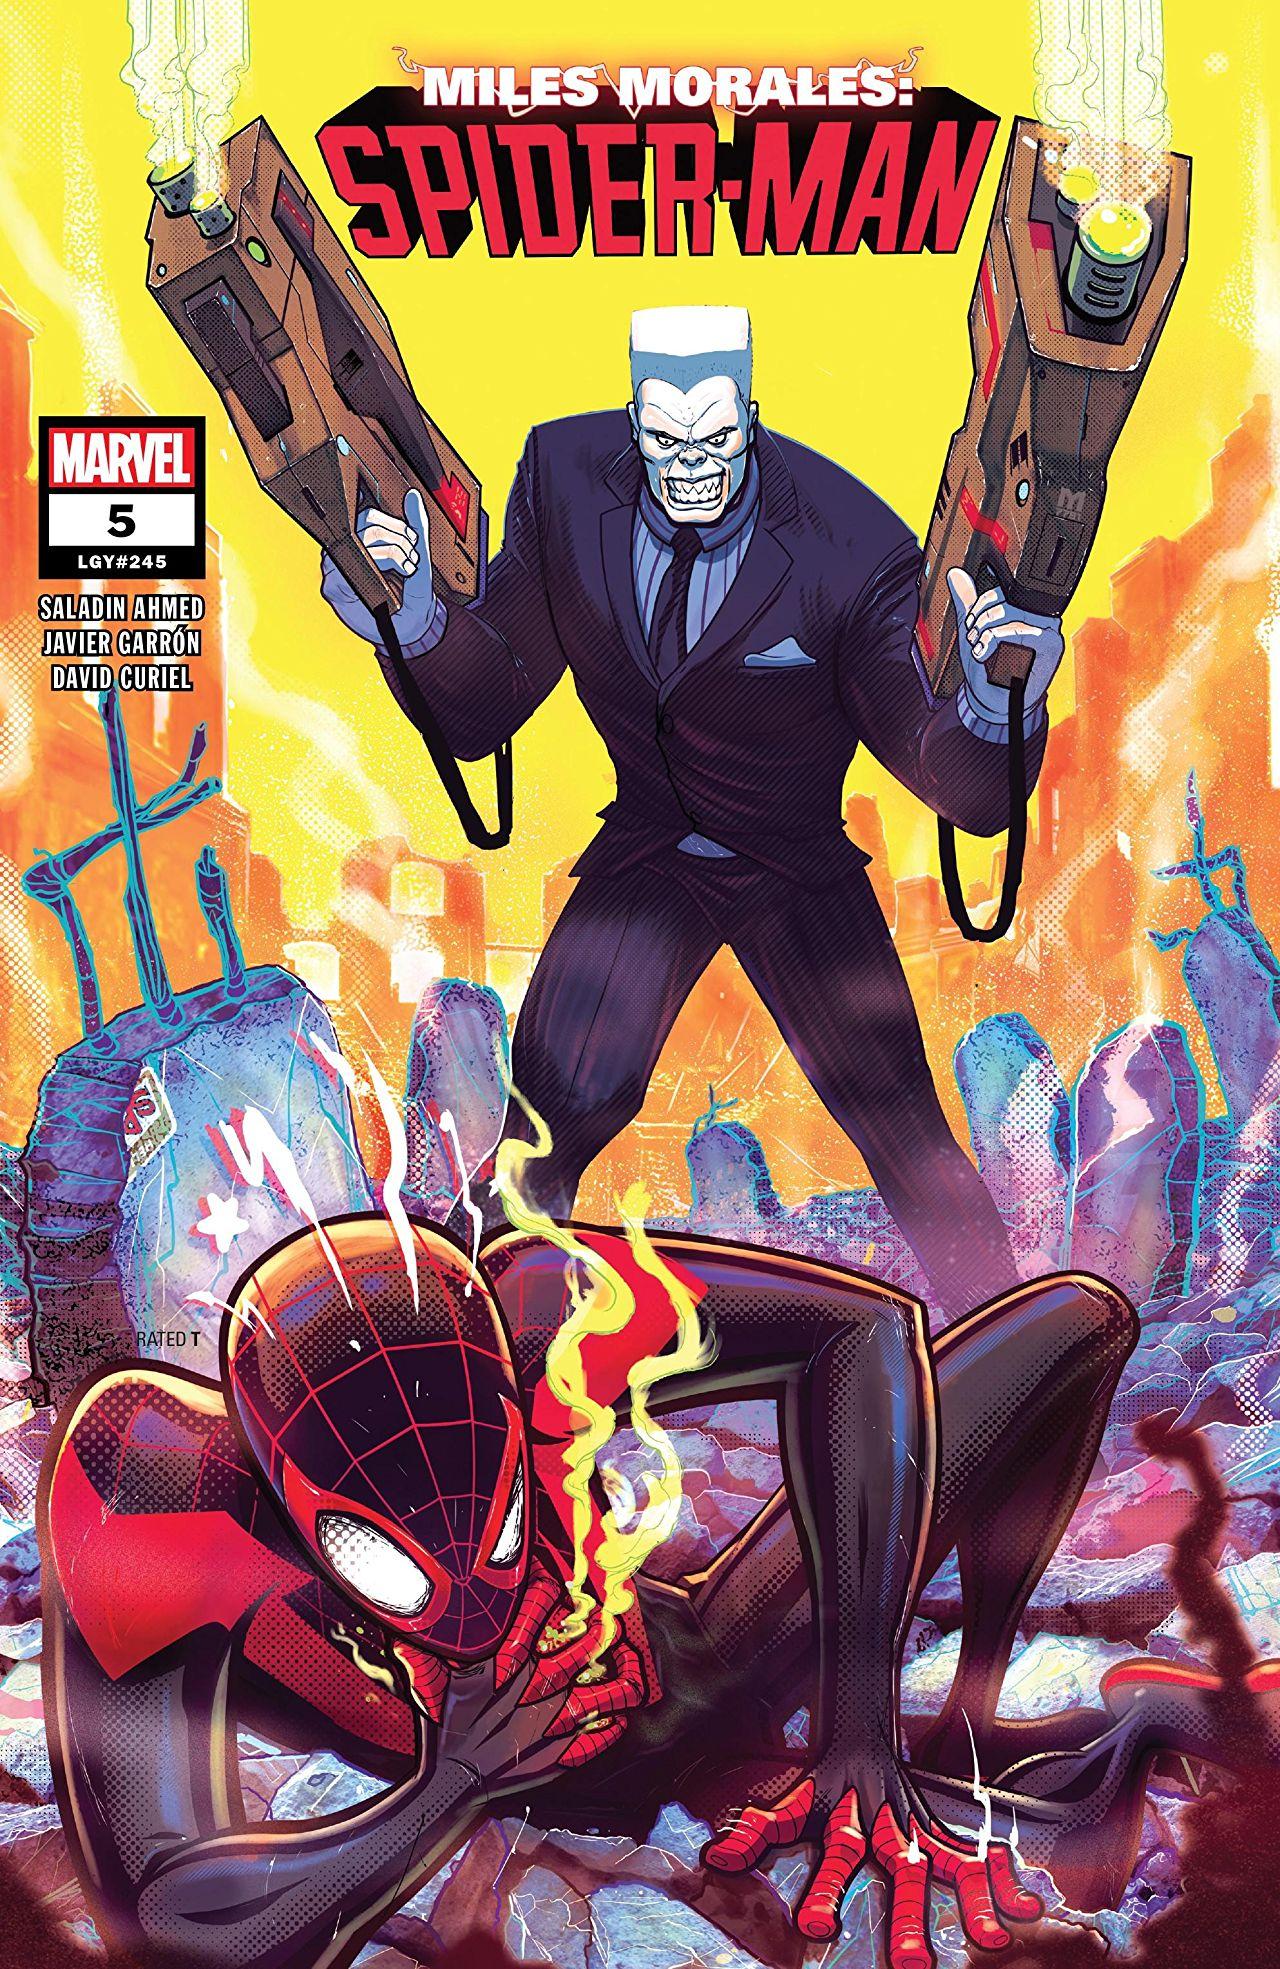 Miles Morales: Spider-Man Vol. 1 #5